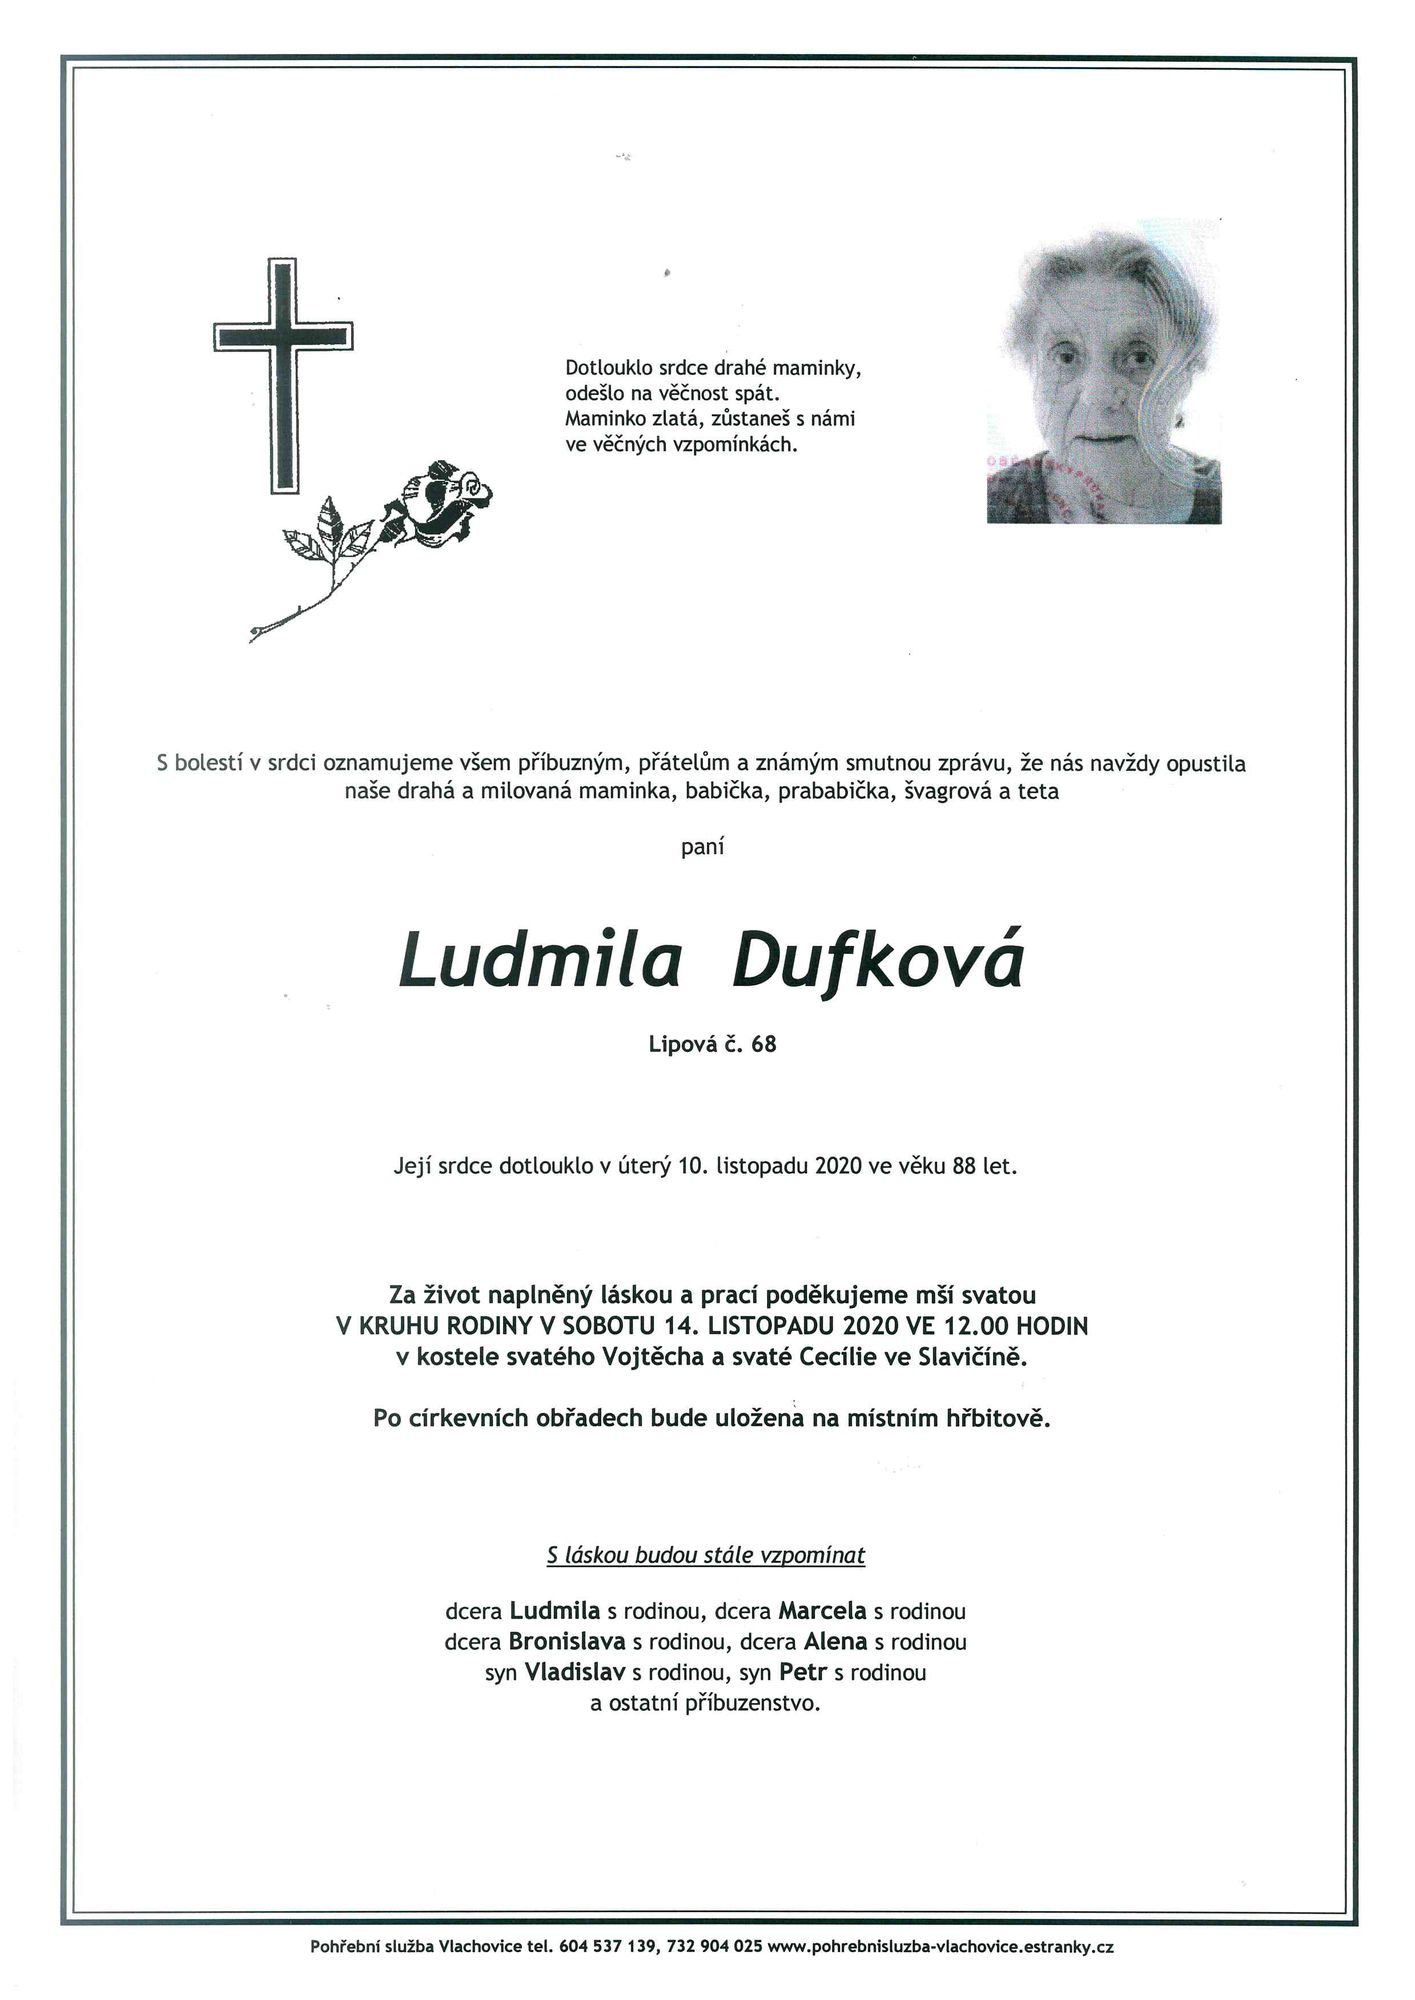 Ludmila Dufková